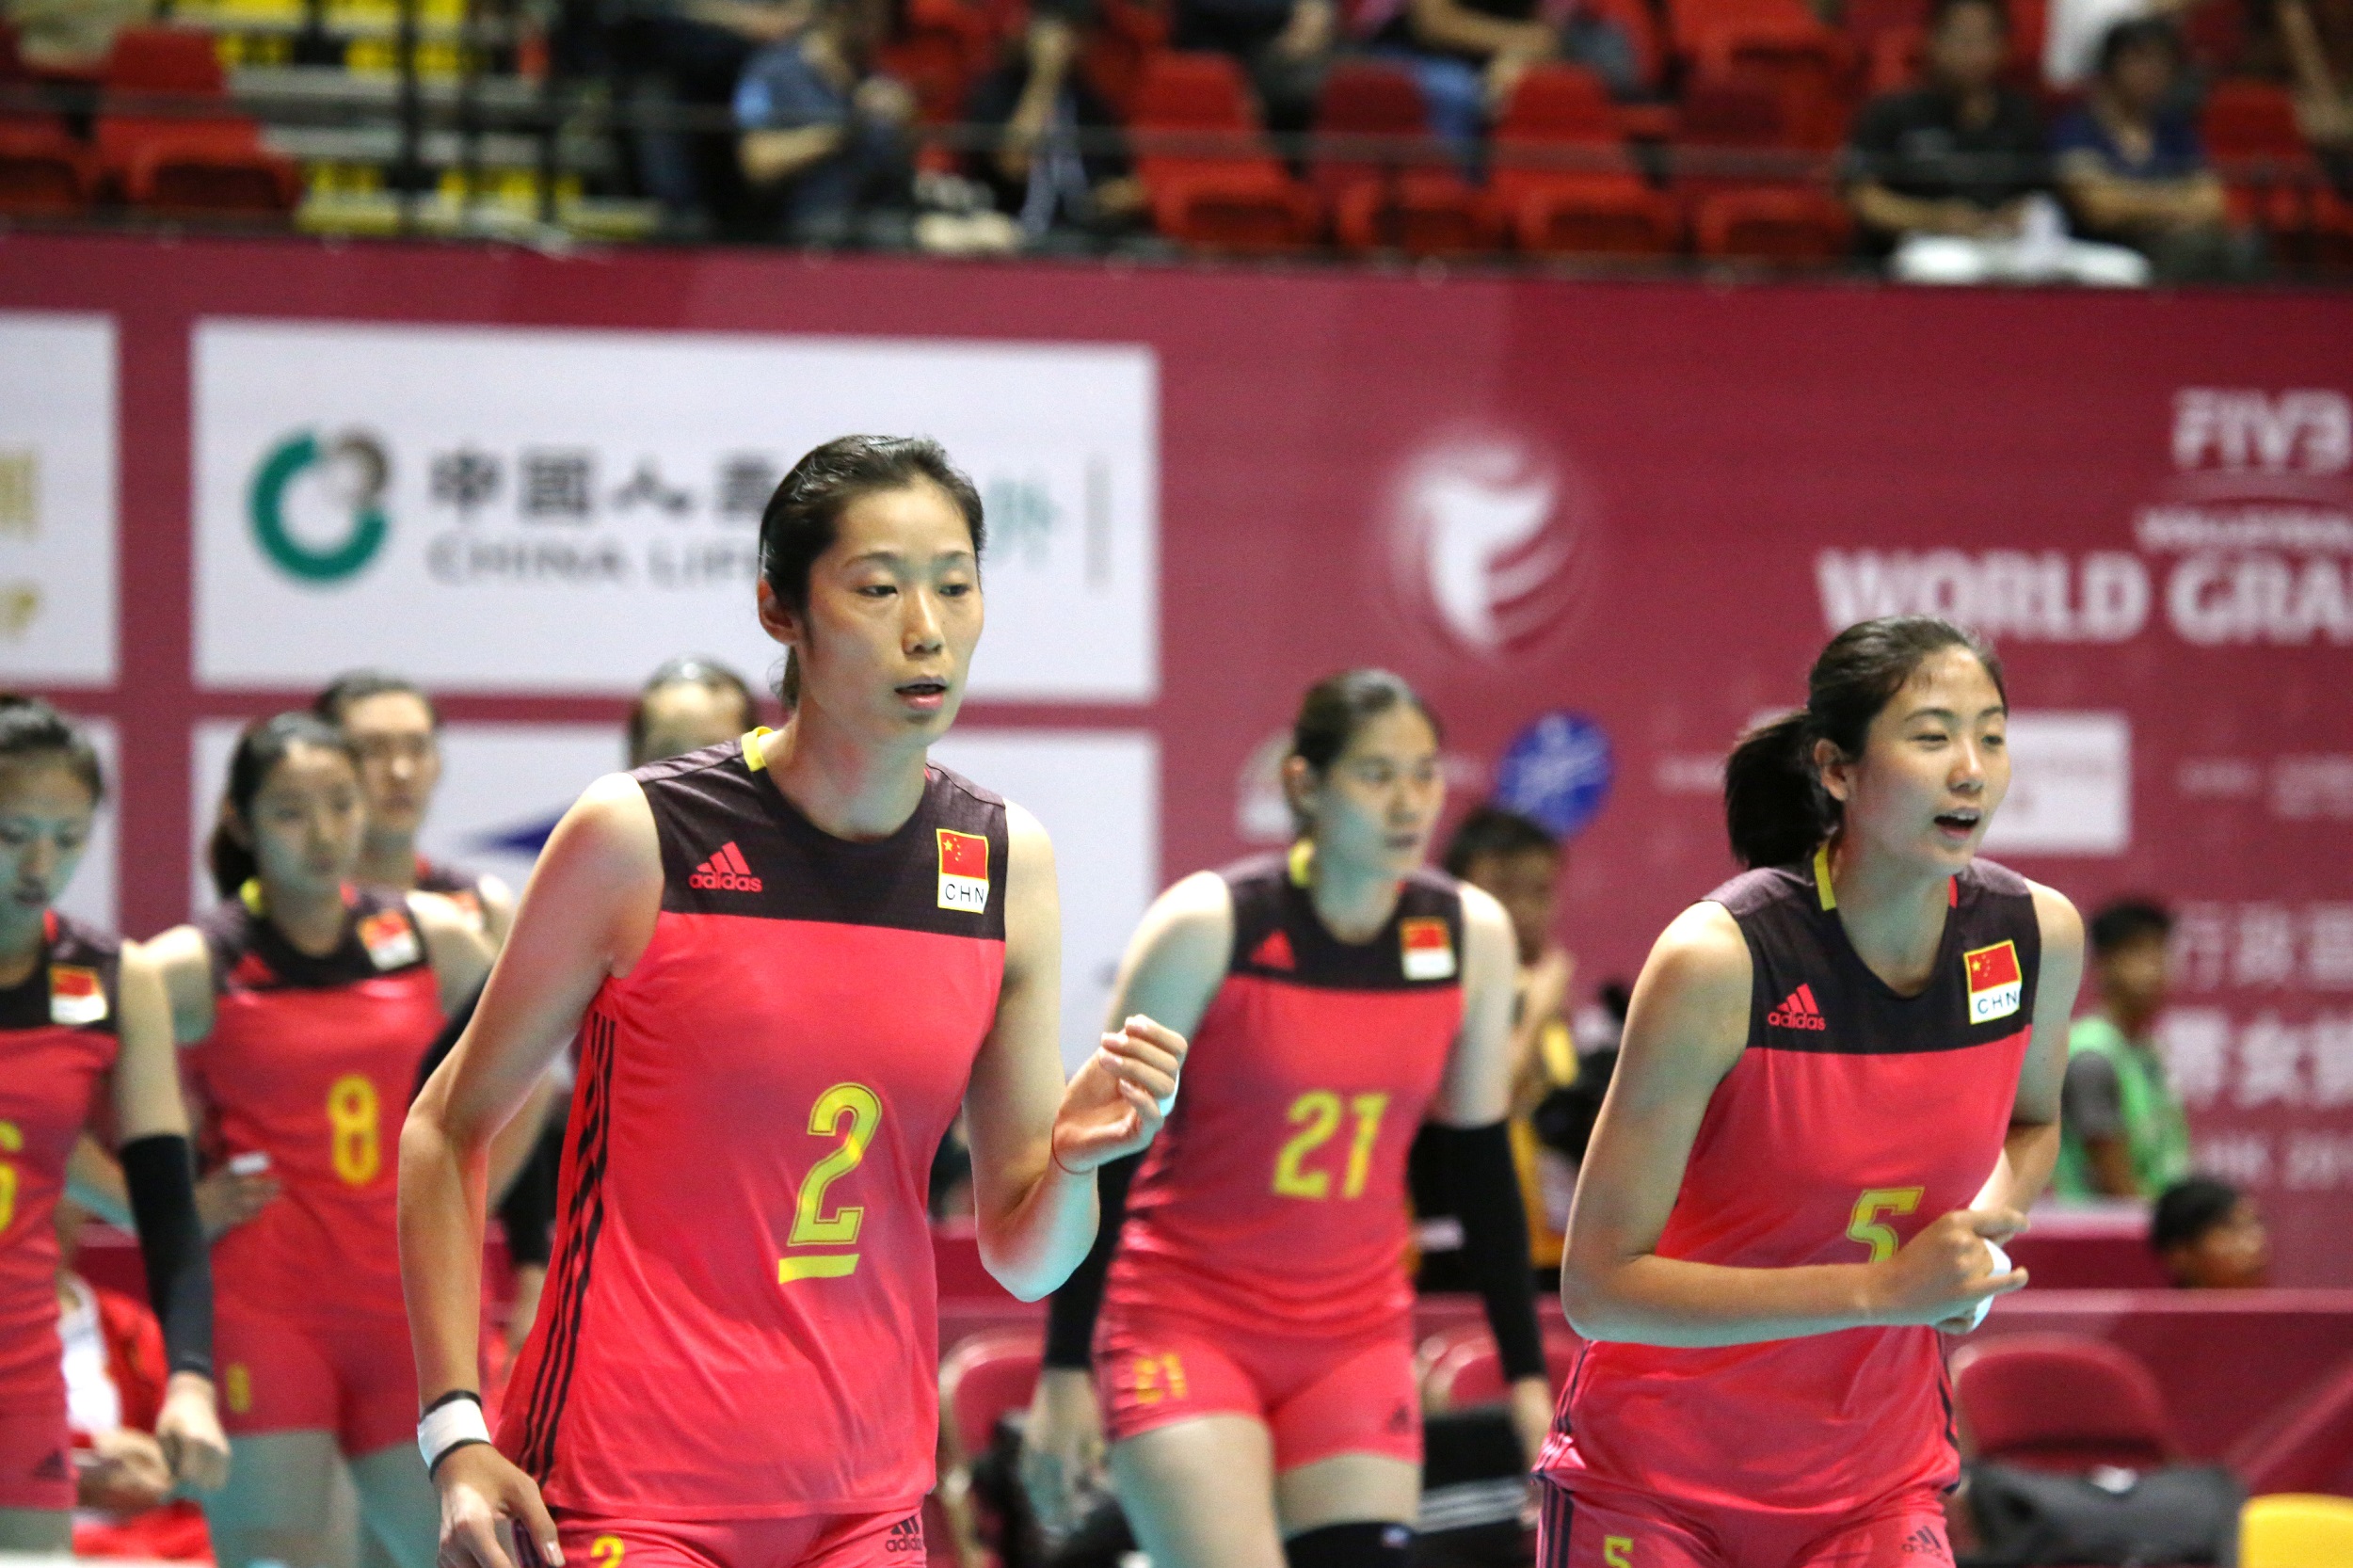 中國人壽(海外)全力支持「FIVB世界女排大獎賽–香港2017」圓滿結束